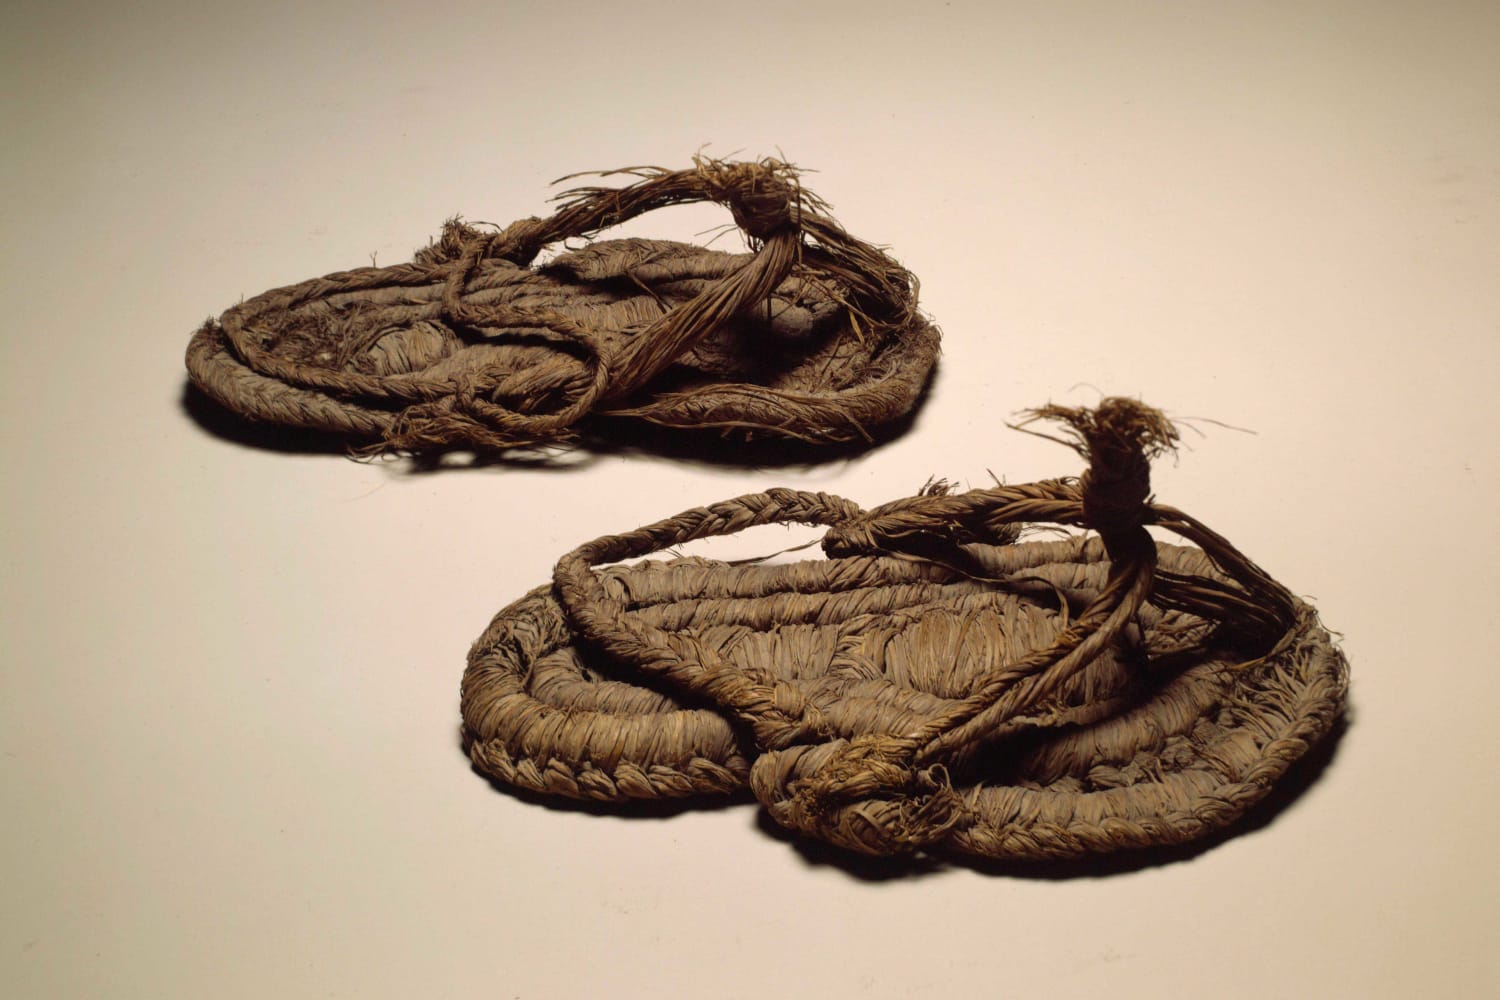 De oudste schoen ter wereld?  Uit het onderzoek bleek dat de sandalen die in de vleermuizengrot werden gevonden duizenden jaren oud zijn